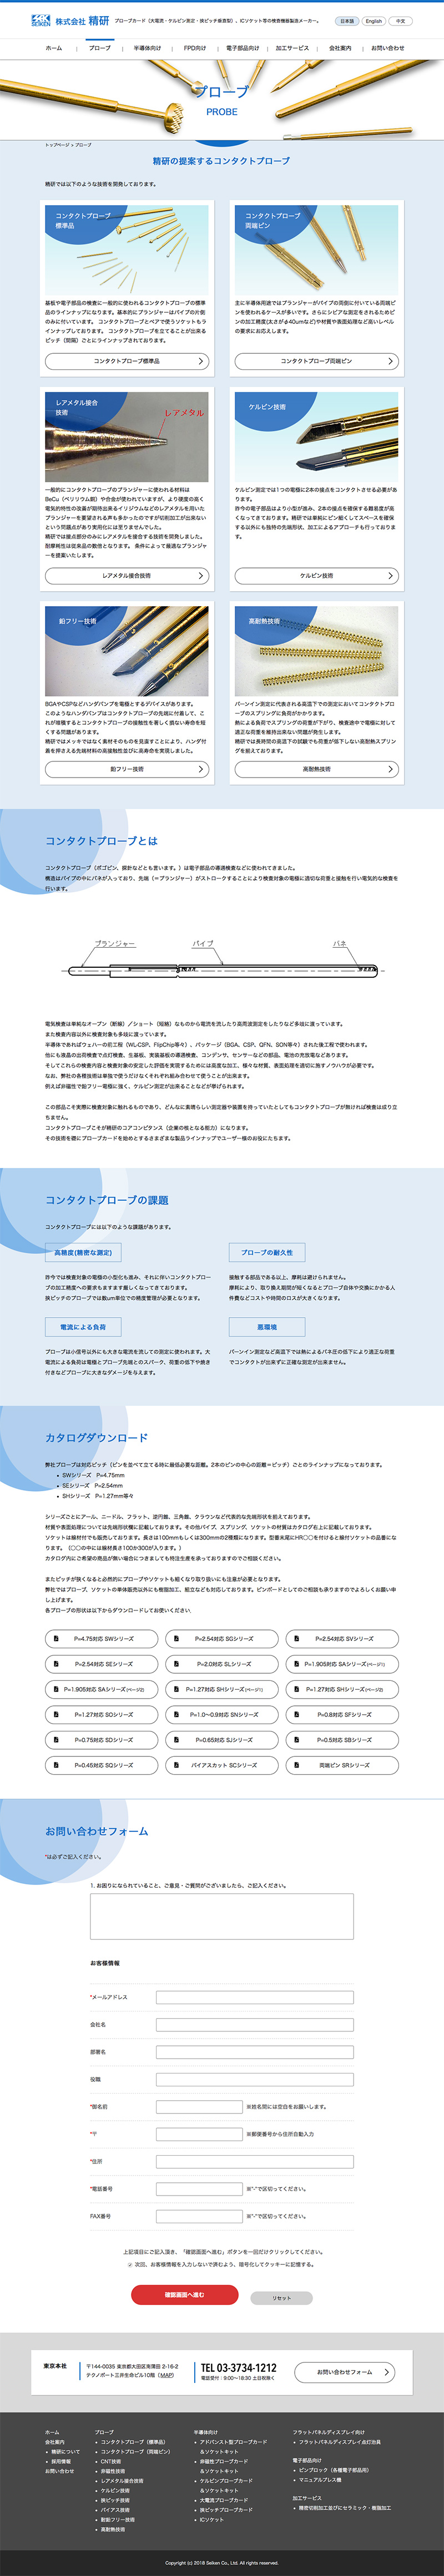 株式会社精研Webサイト 下層ページデザイン